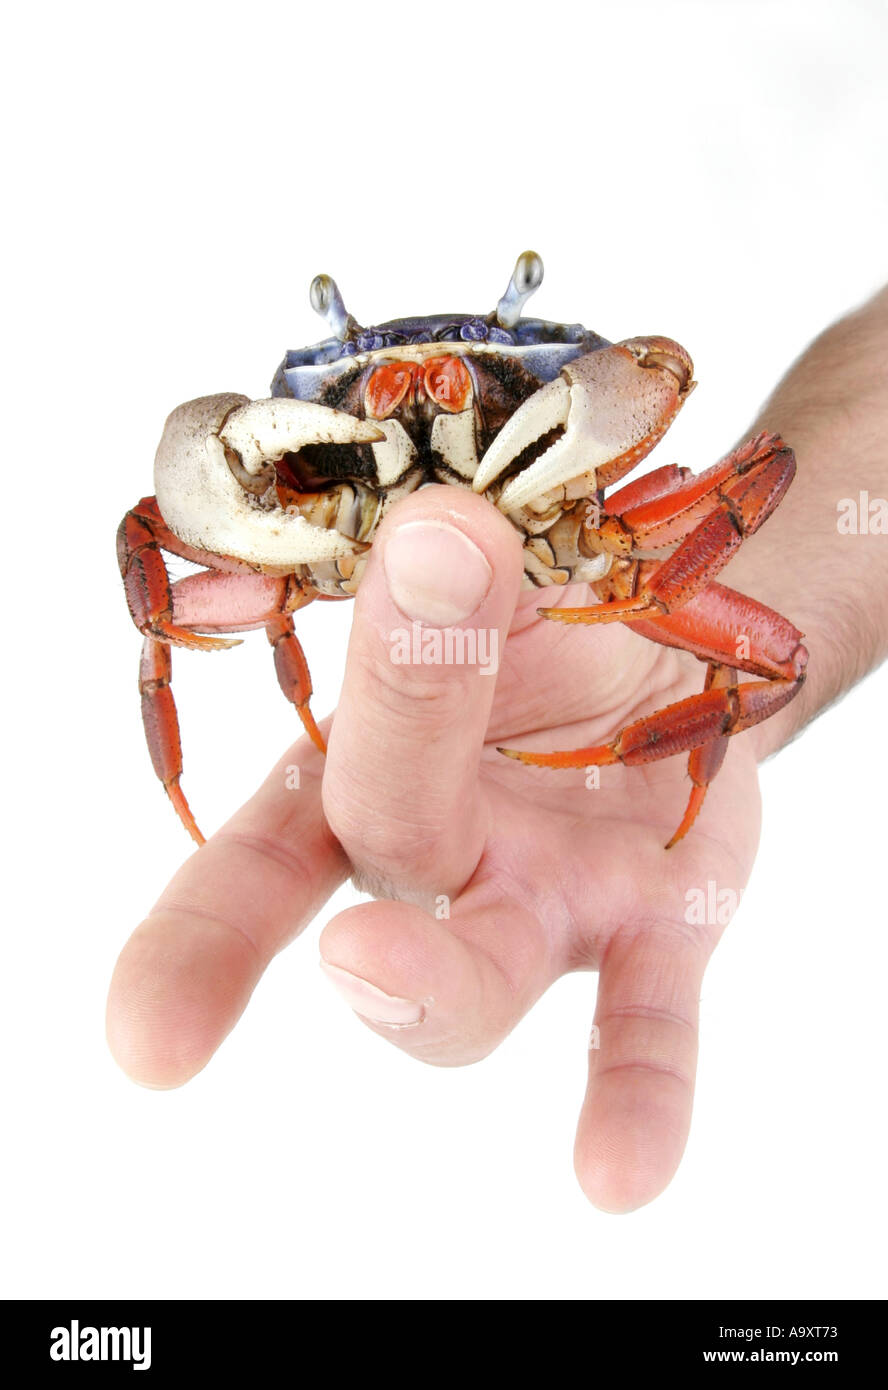 rainbow crab, West African rainbow crab (Cardisoma armatum), in hand, tweaking finger. Stock Photo